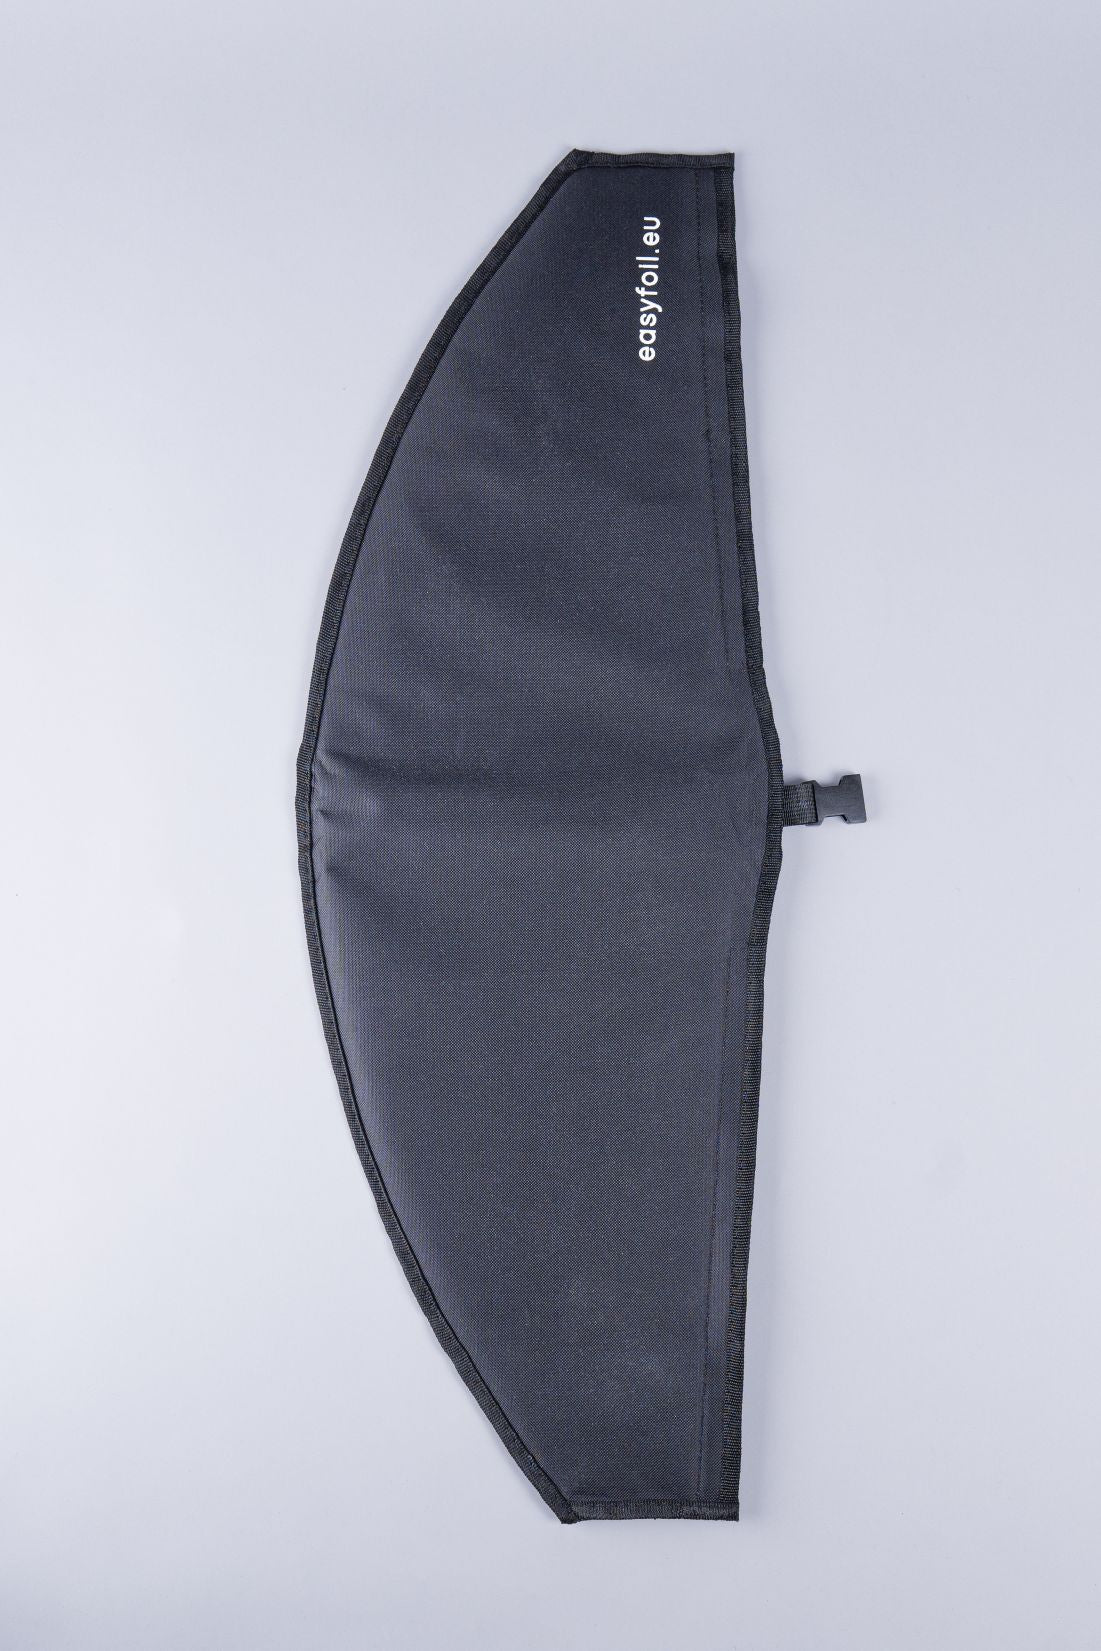 EASYFOIL Wing Bag Set